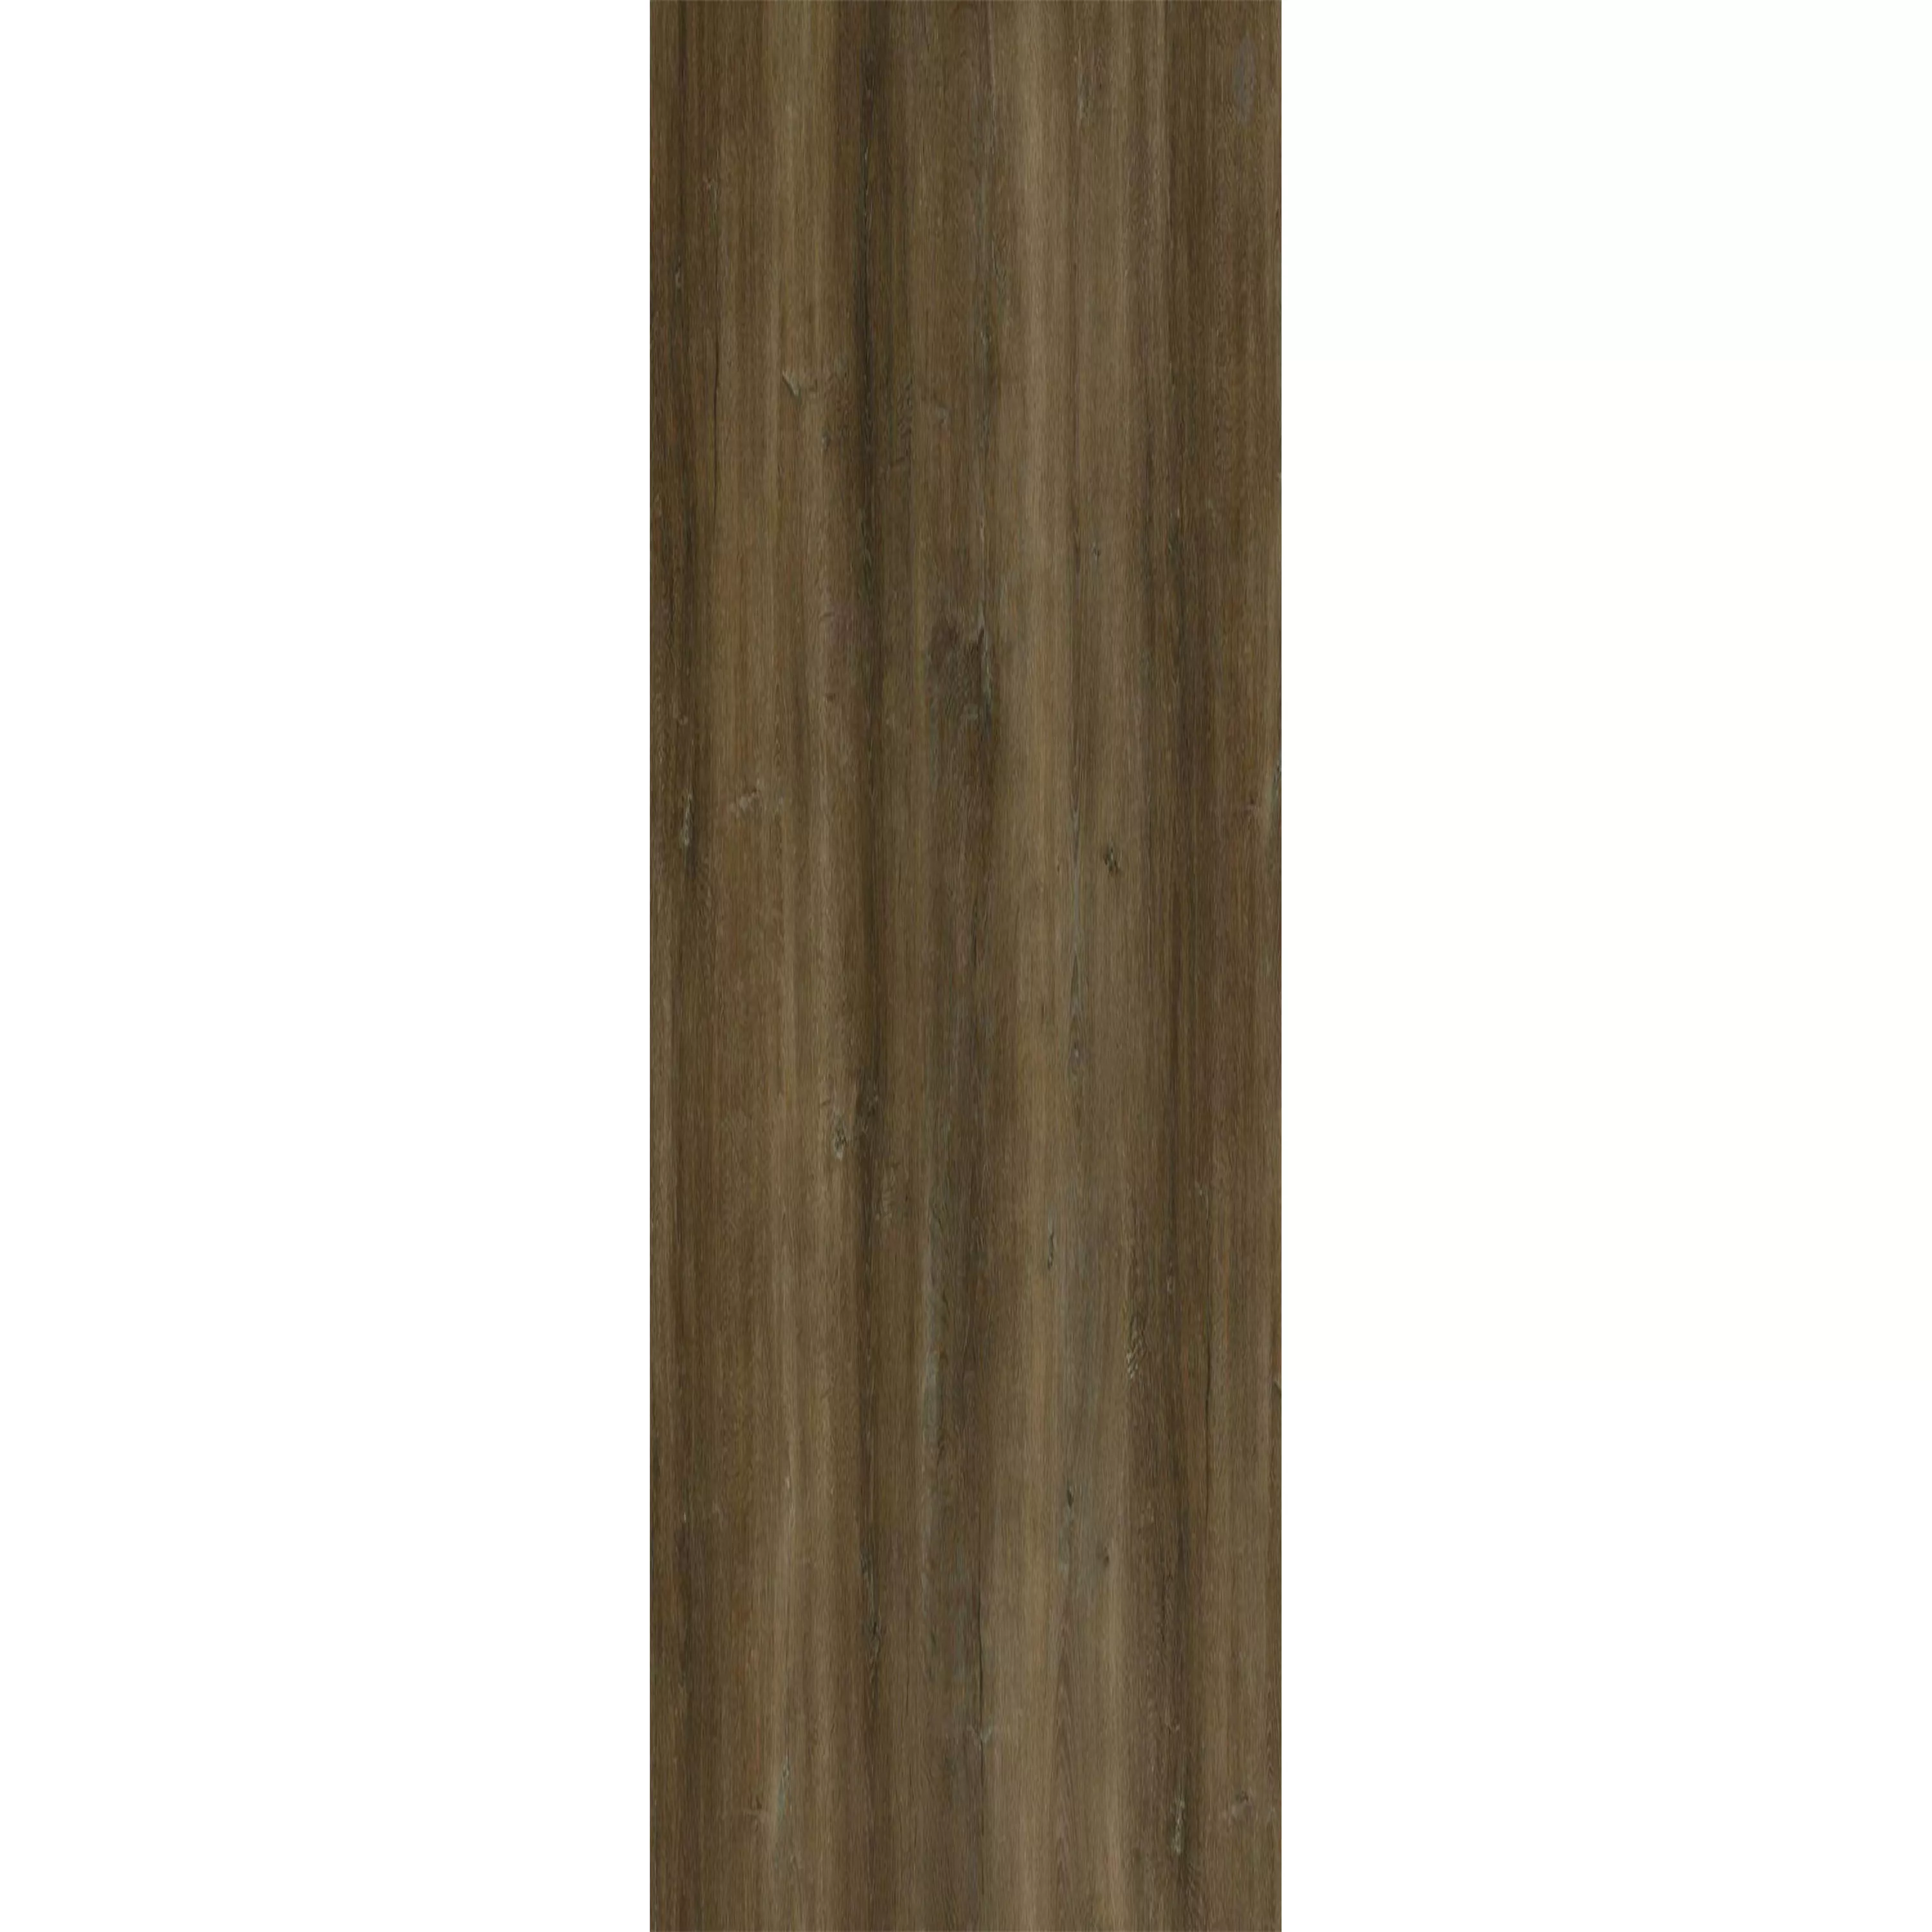 Suelo De Vinilo Sistema De Clic Reedley Marrón 17,2x121cm